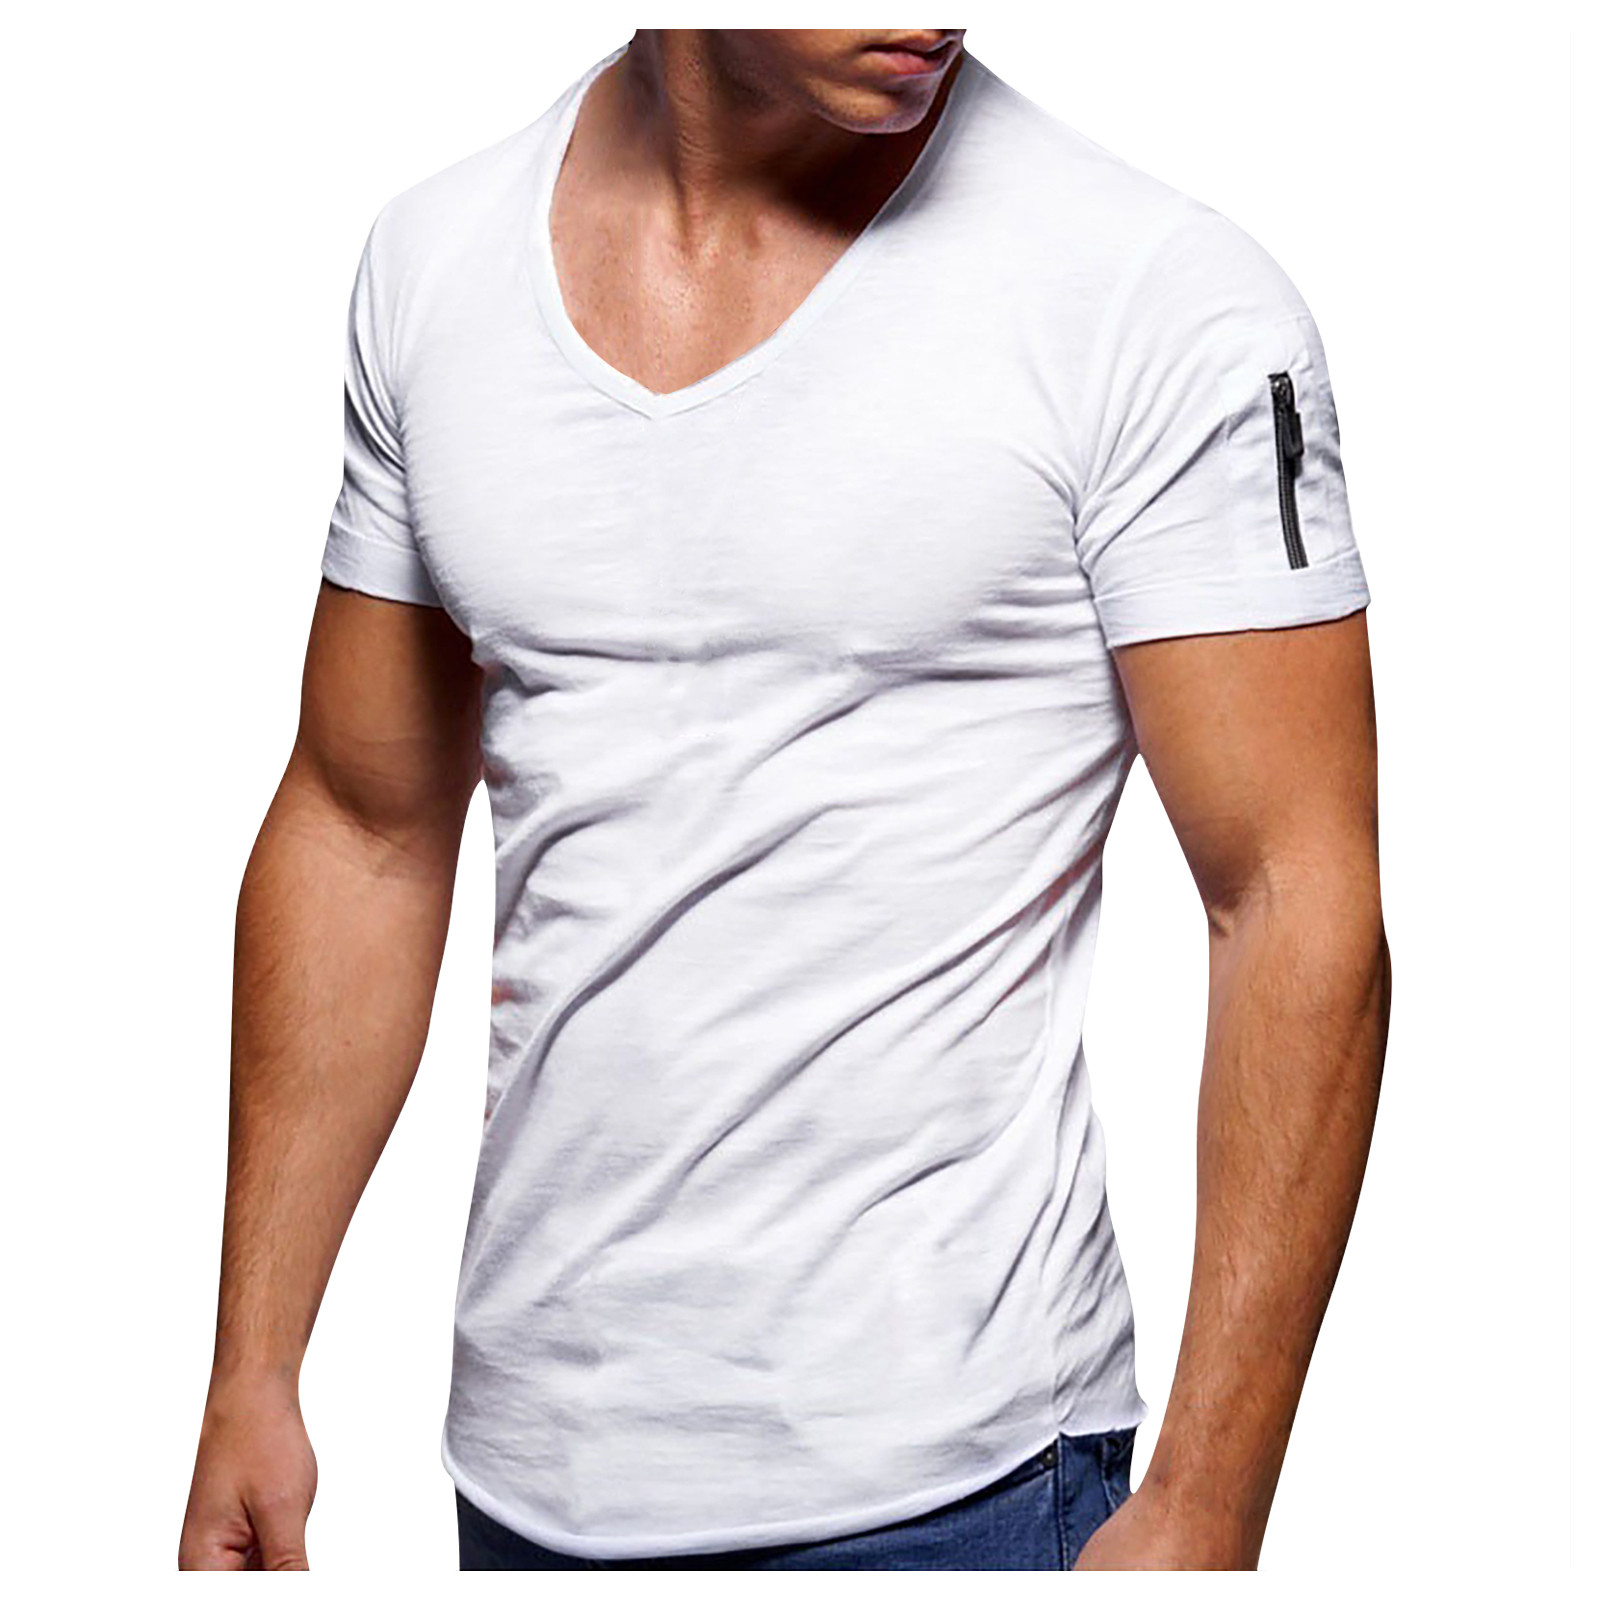 ELFINDEA clothes for men mens workout clothes Men's Shirt T-Shirts